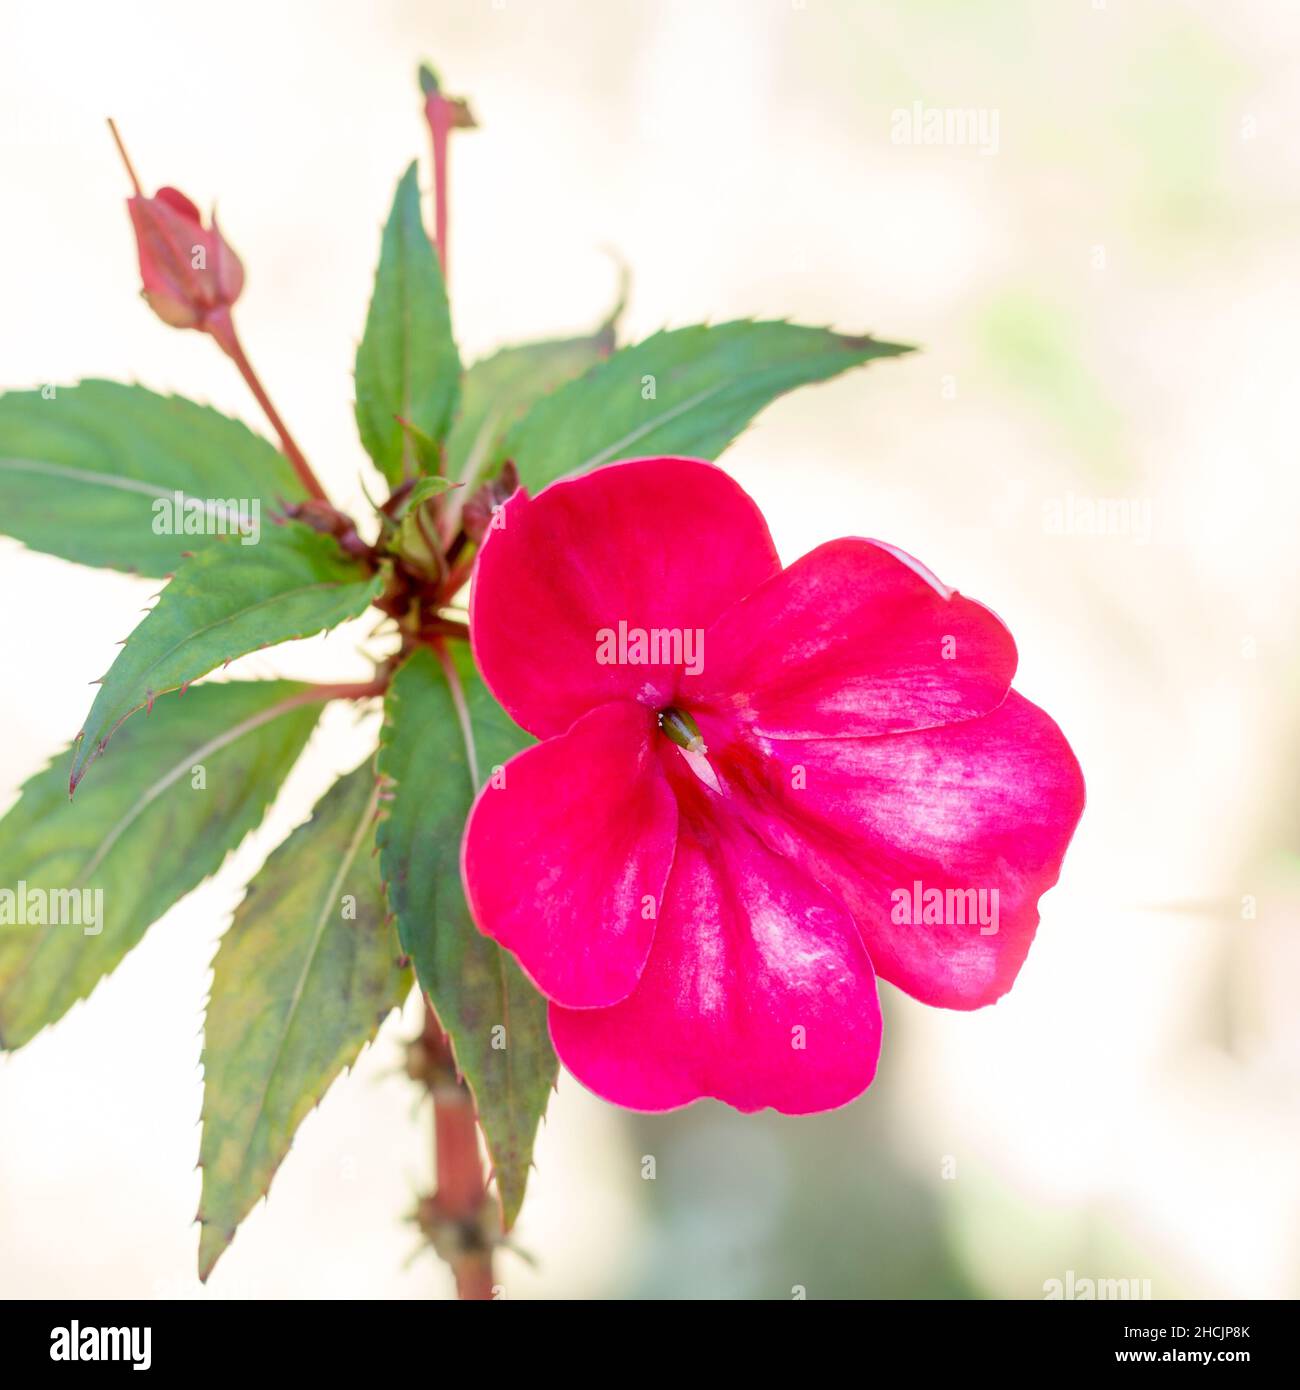 nuova cavia impatiens o impatiens fiore hawkeri, primo piano vista di una fioritura rosa nel giardino Foto Stock